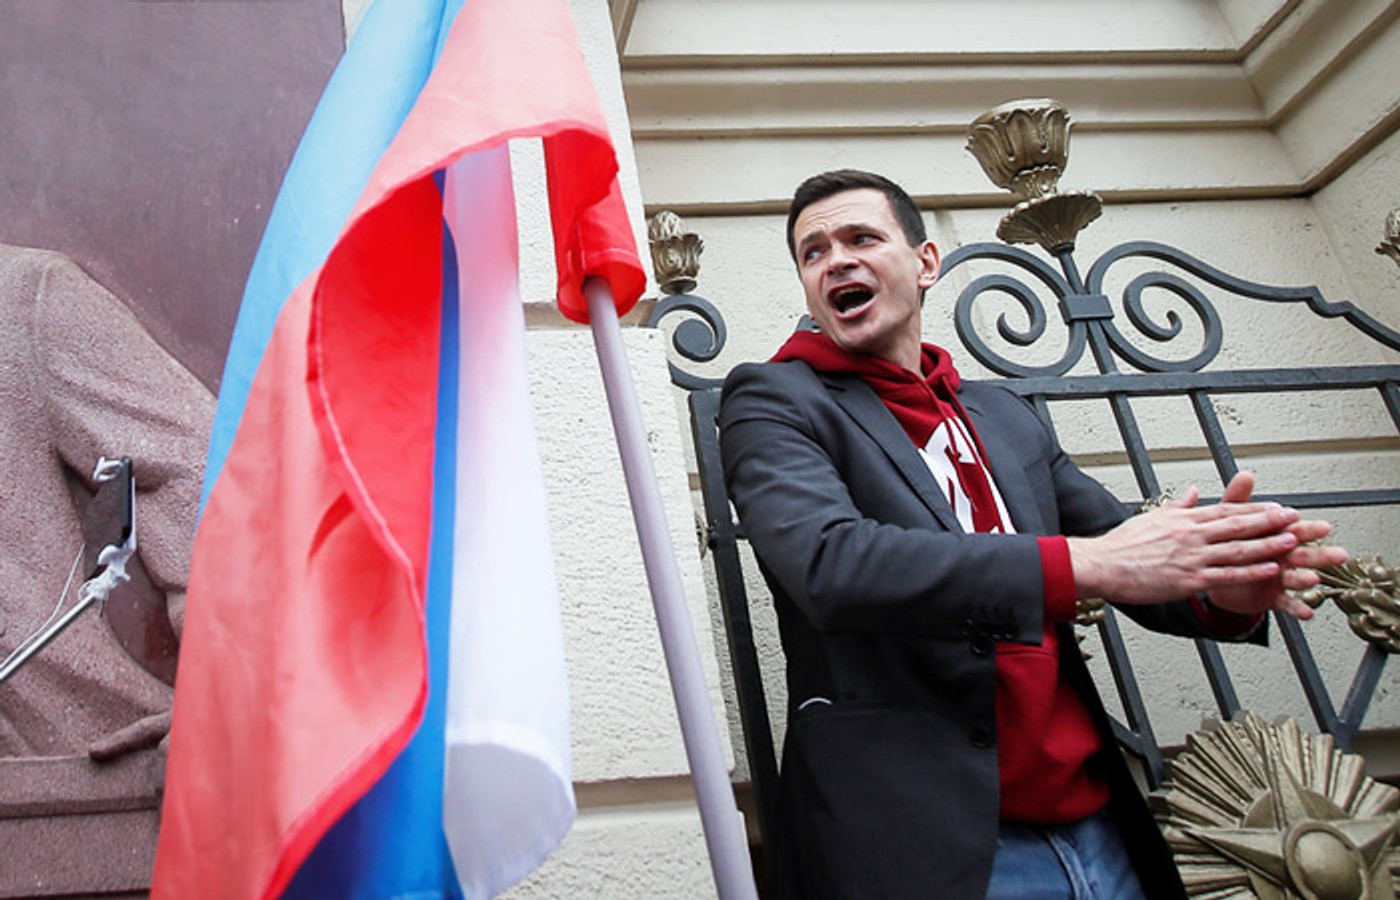 Ілля Яшин оголосив про плани брати участь у виборах до Мосміськдуми